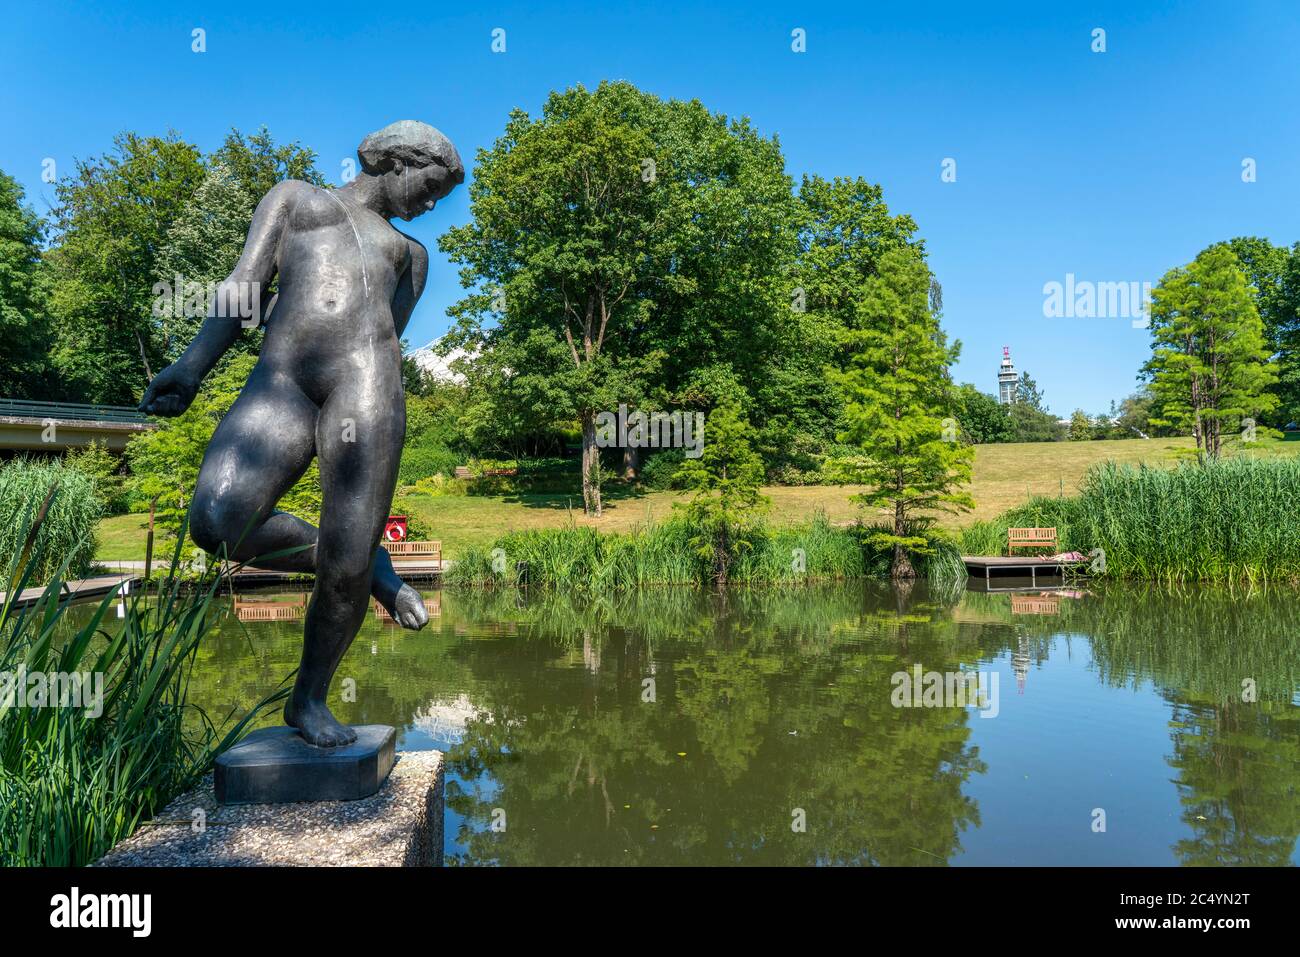 El Grugapark, Essen, jardín botánico, parque para el ocio y la recreación local, Waldsee, el trabajo de arte Große Badende, NRW, Alemania Foto de stock